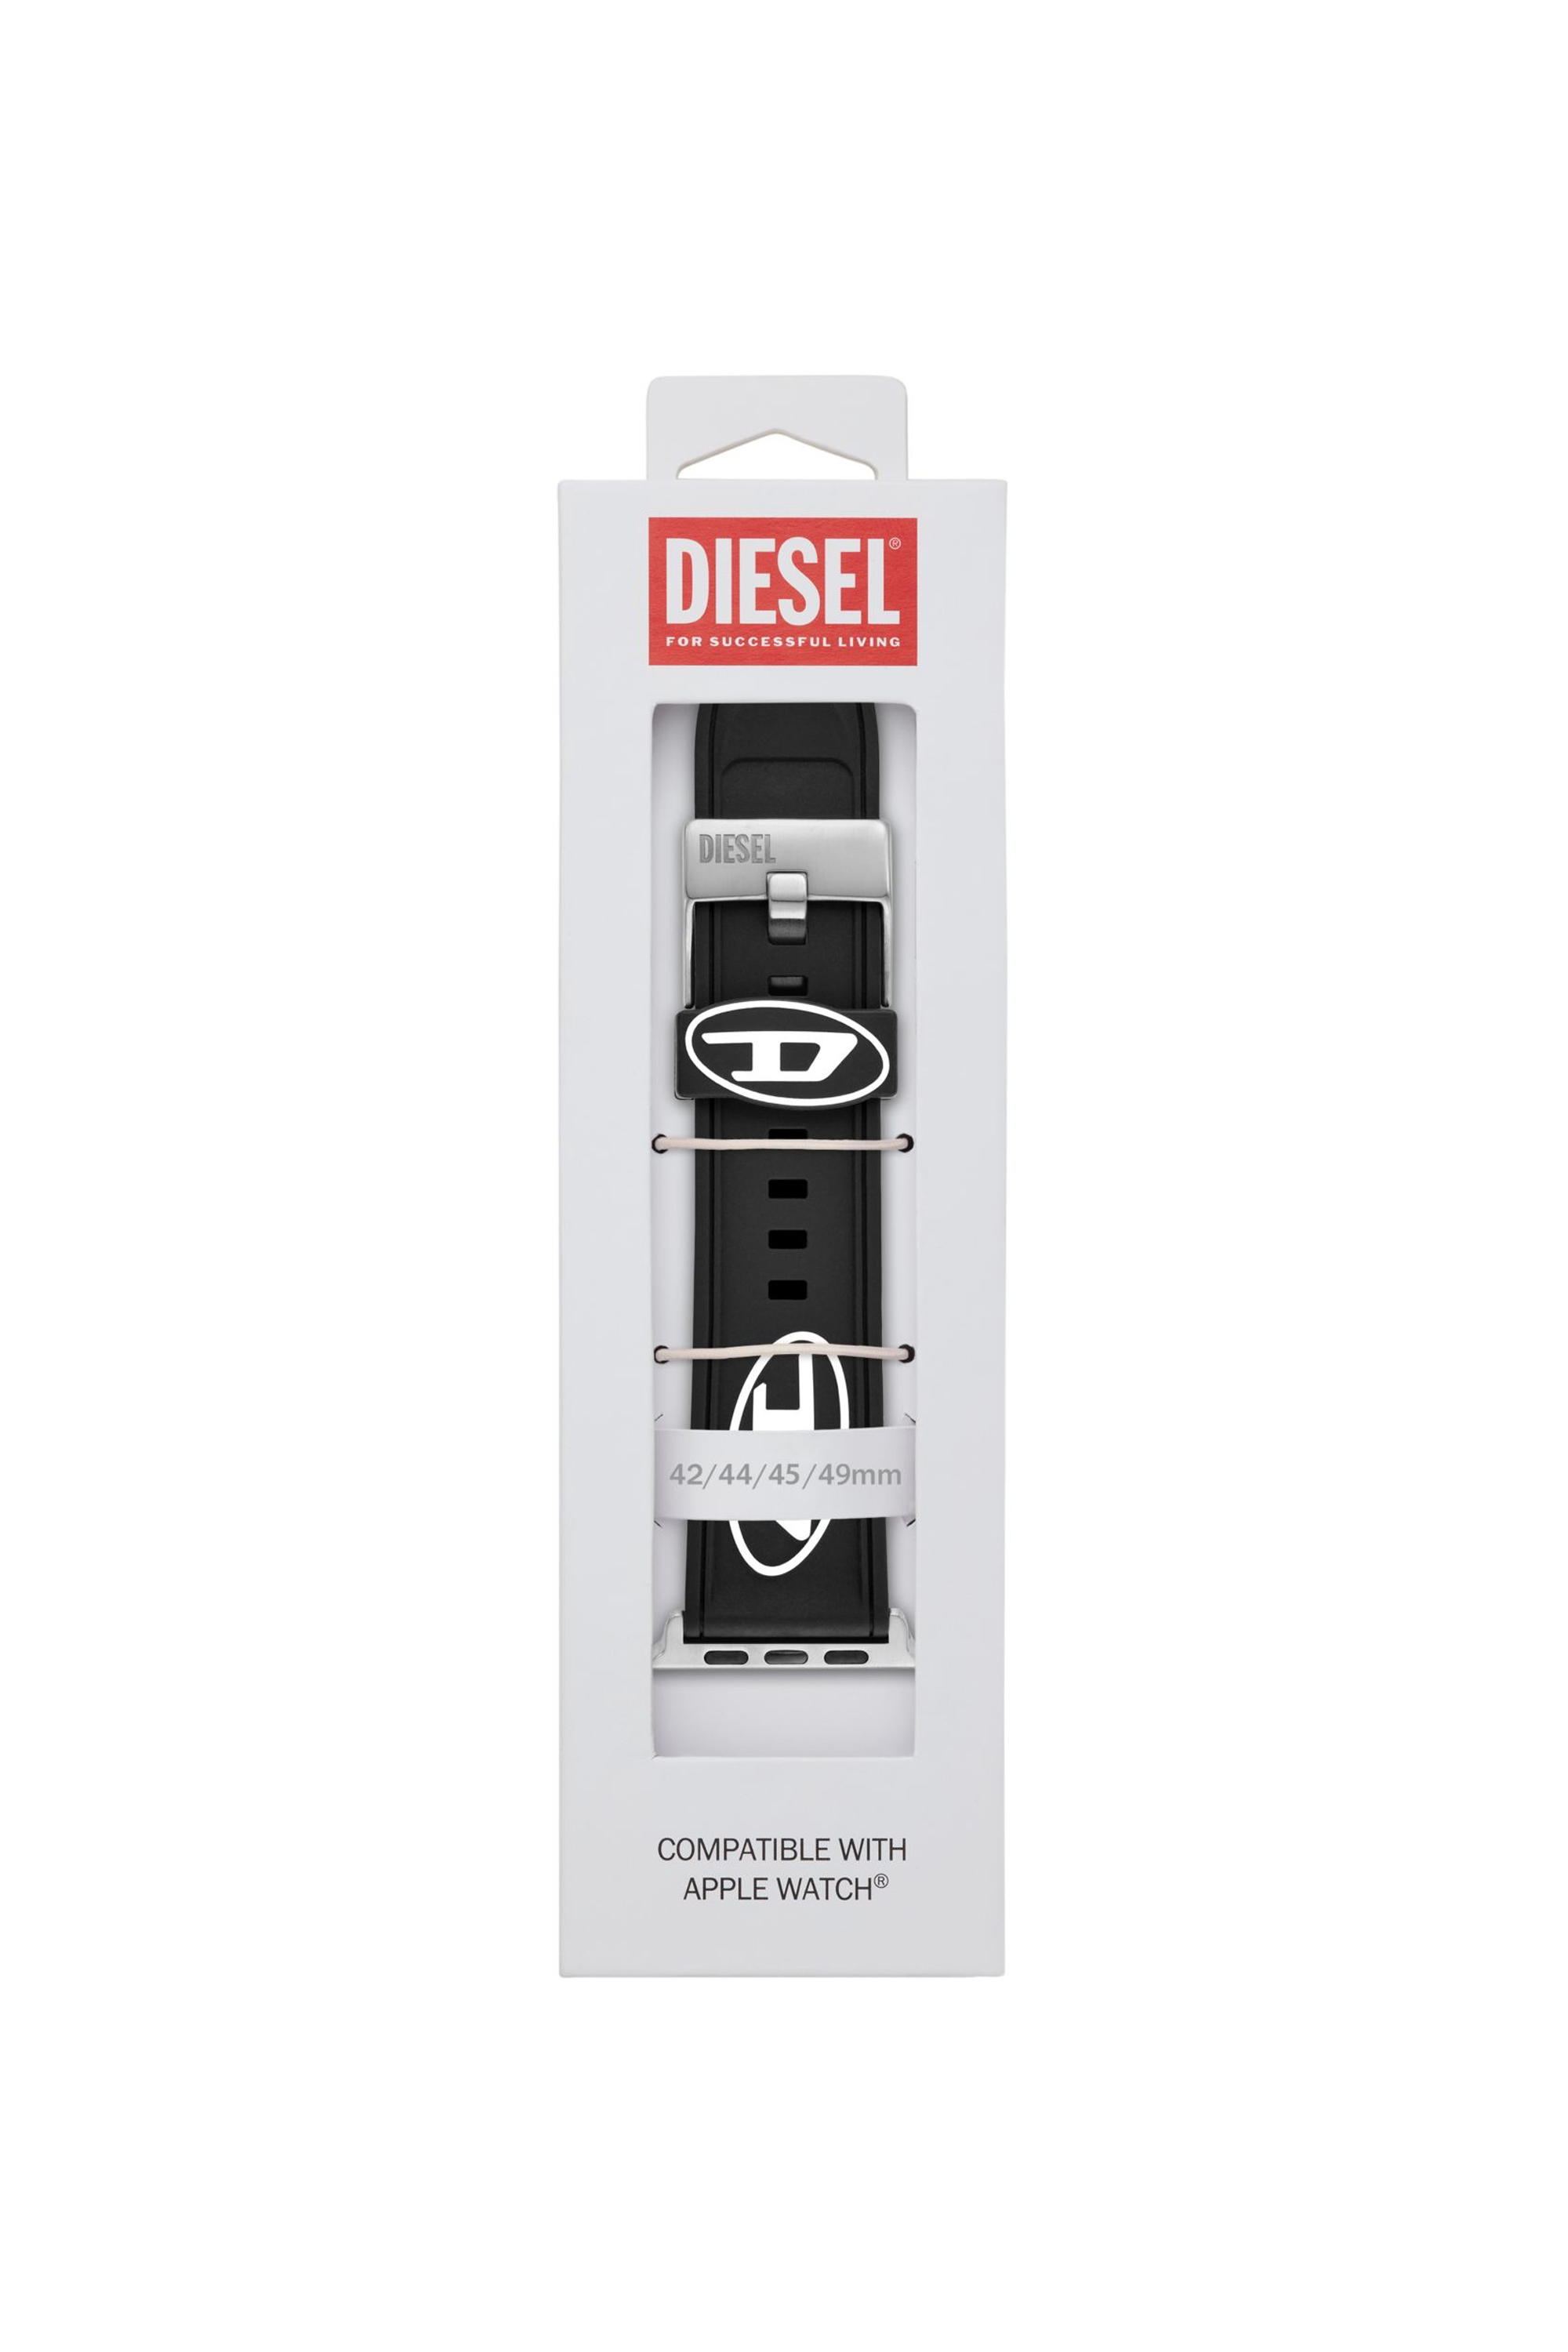 Diesel - DSS0018, Homme Bracelet de montre en silicone pour l'Apple Watch®, 42mm, 44mm, 45mm et 49mm in Noir - Image 3